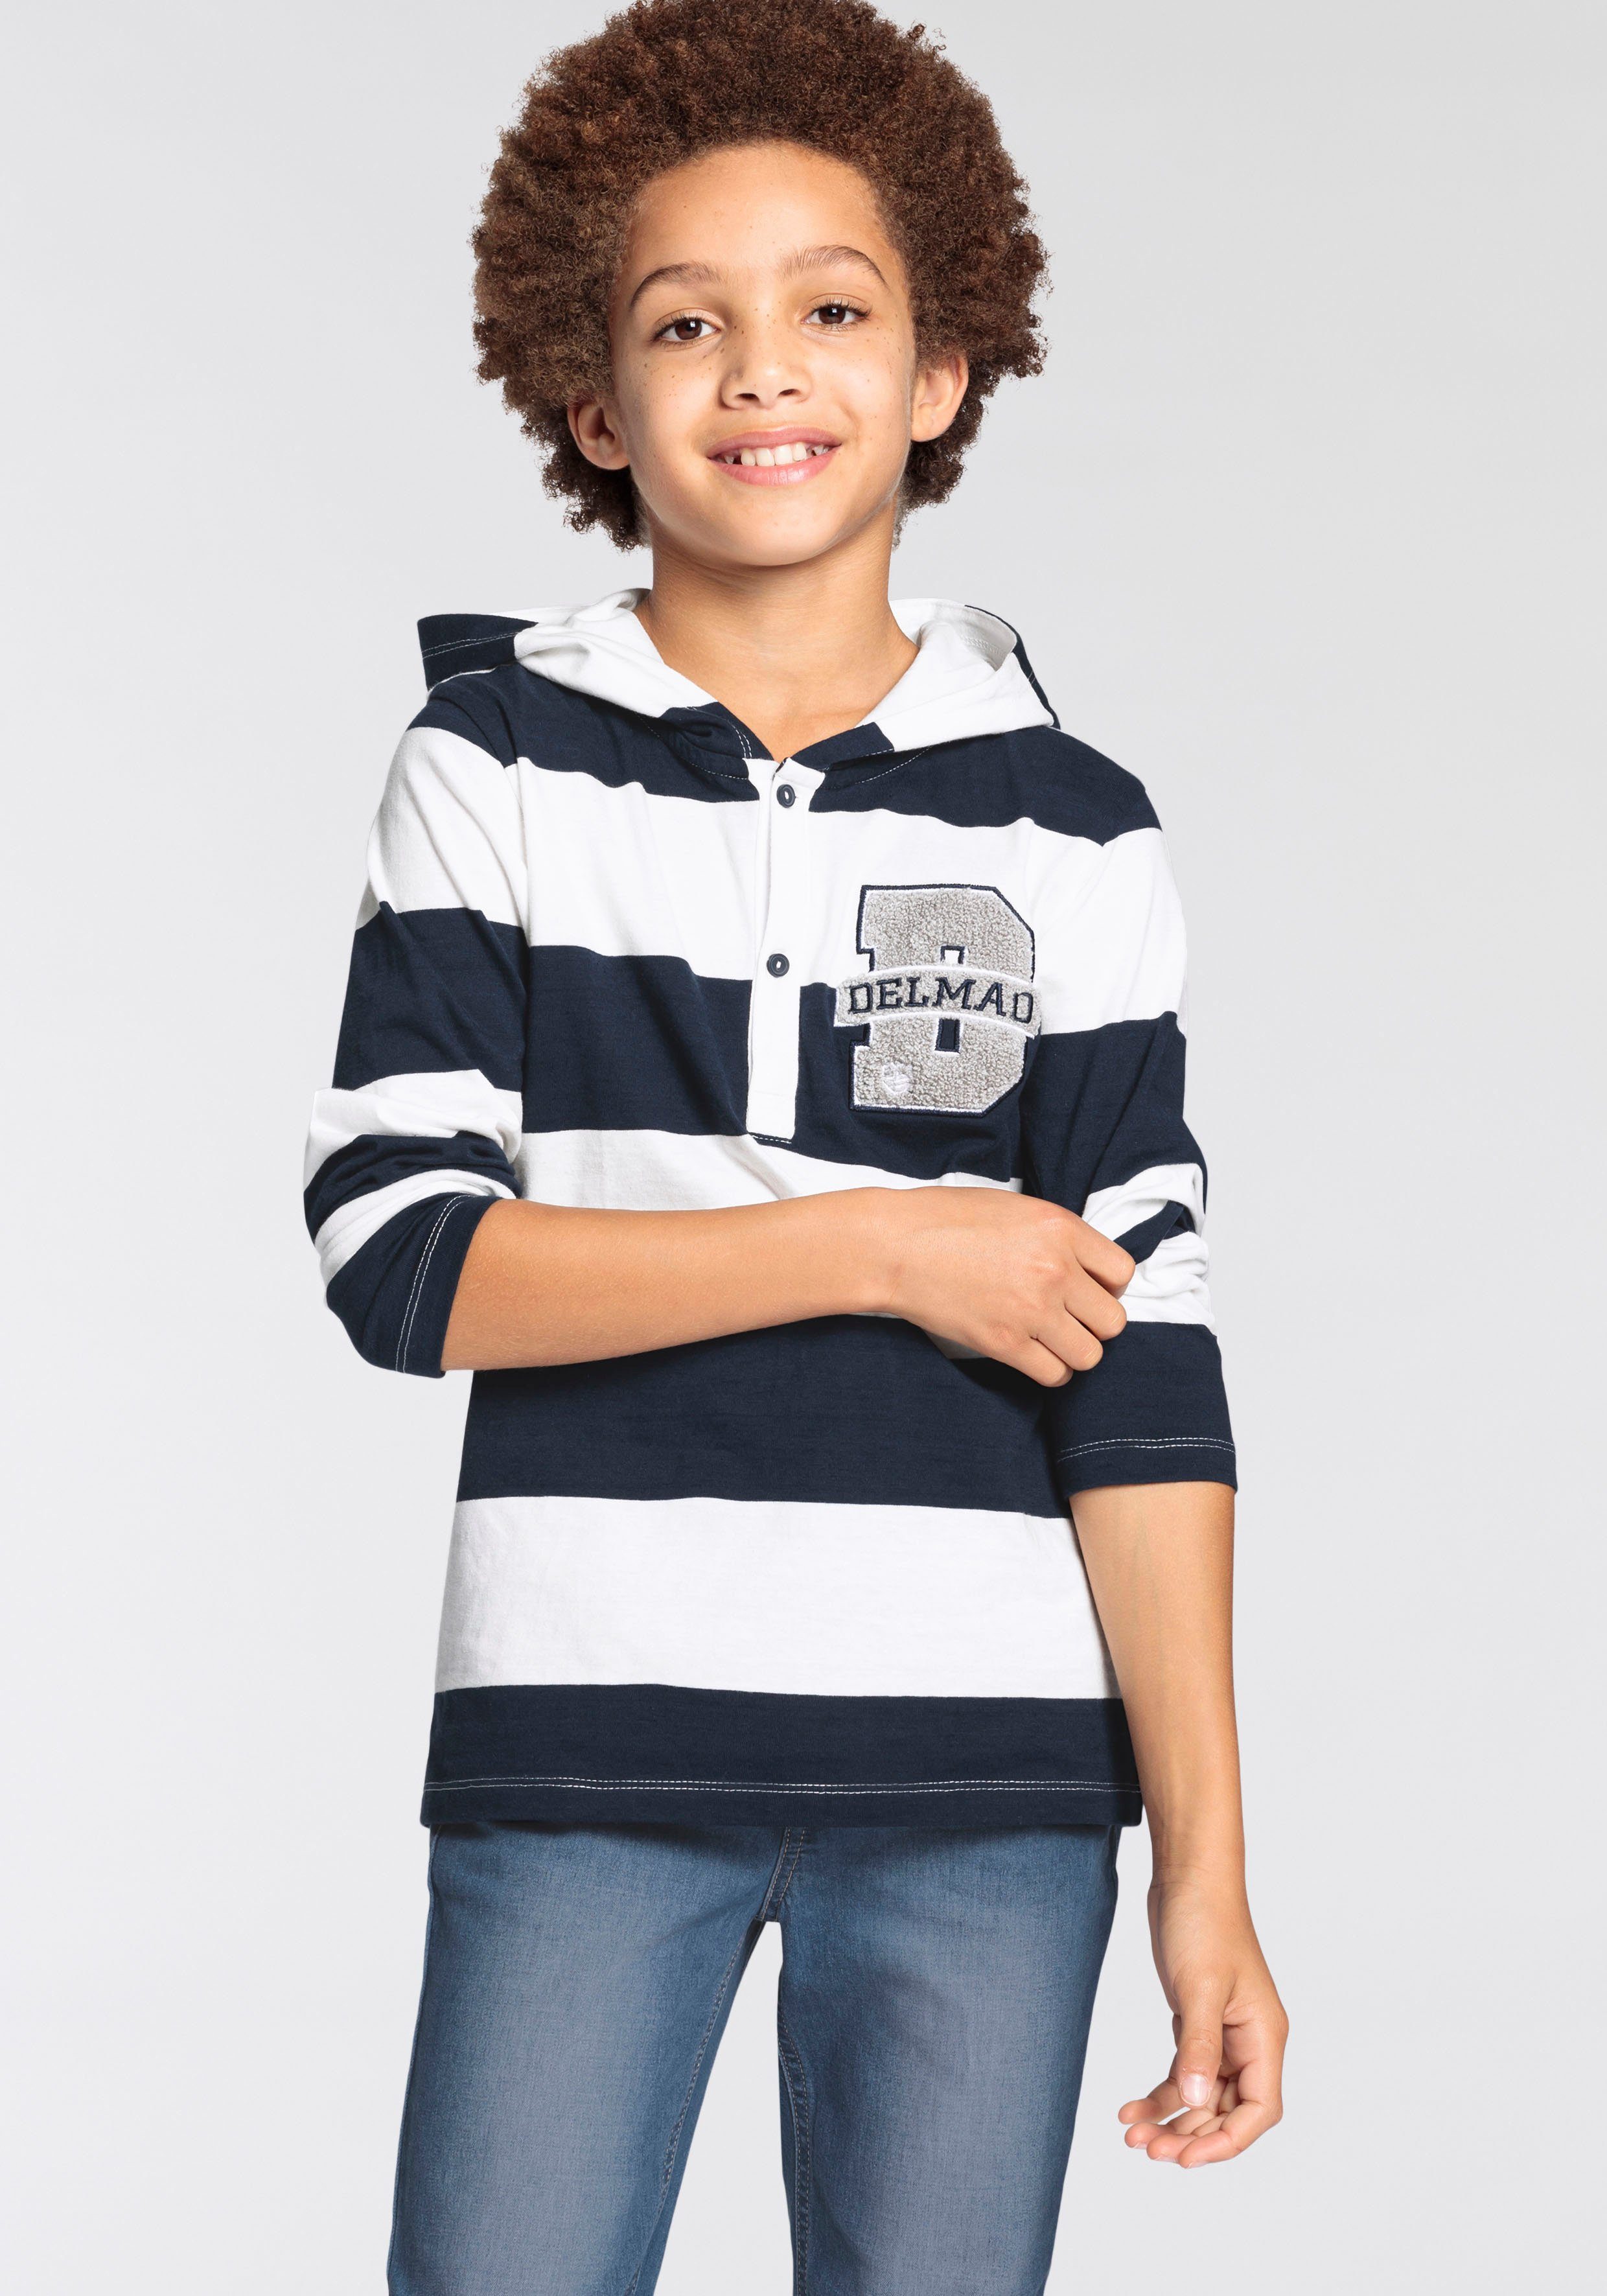 DELMAO Kapuzenshirt für Jungen, Ringelshirt, NEUE MARKE | Kapuzenshirts